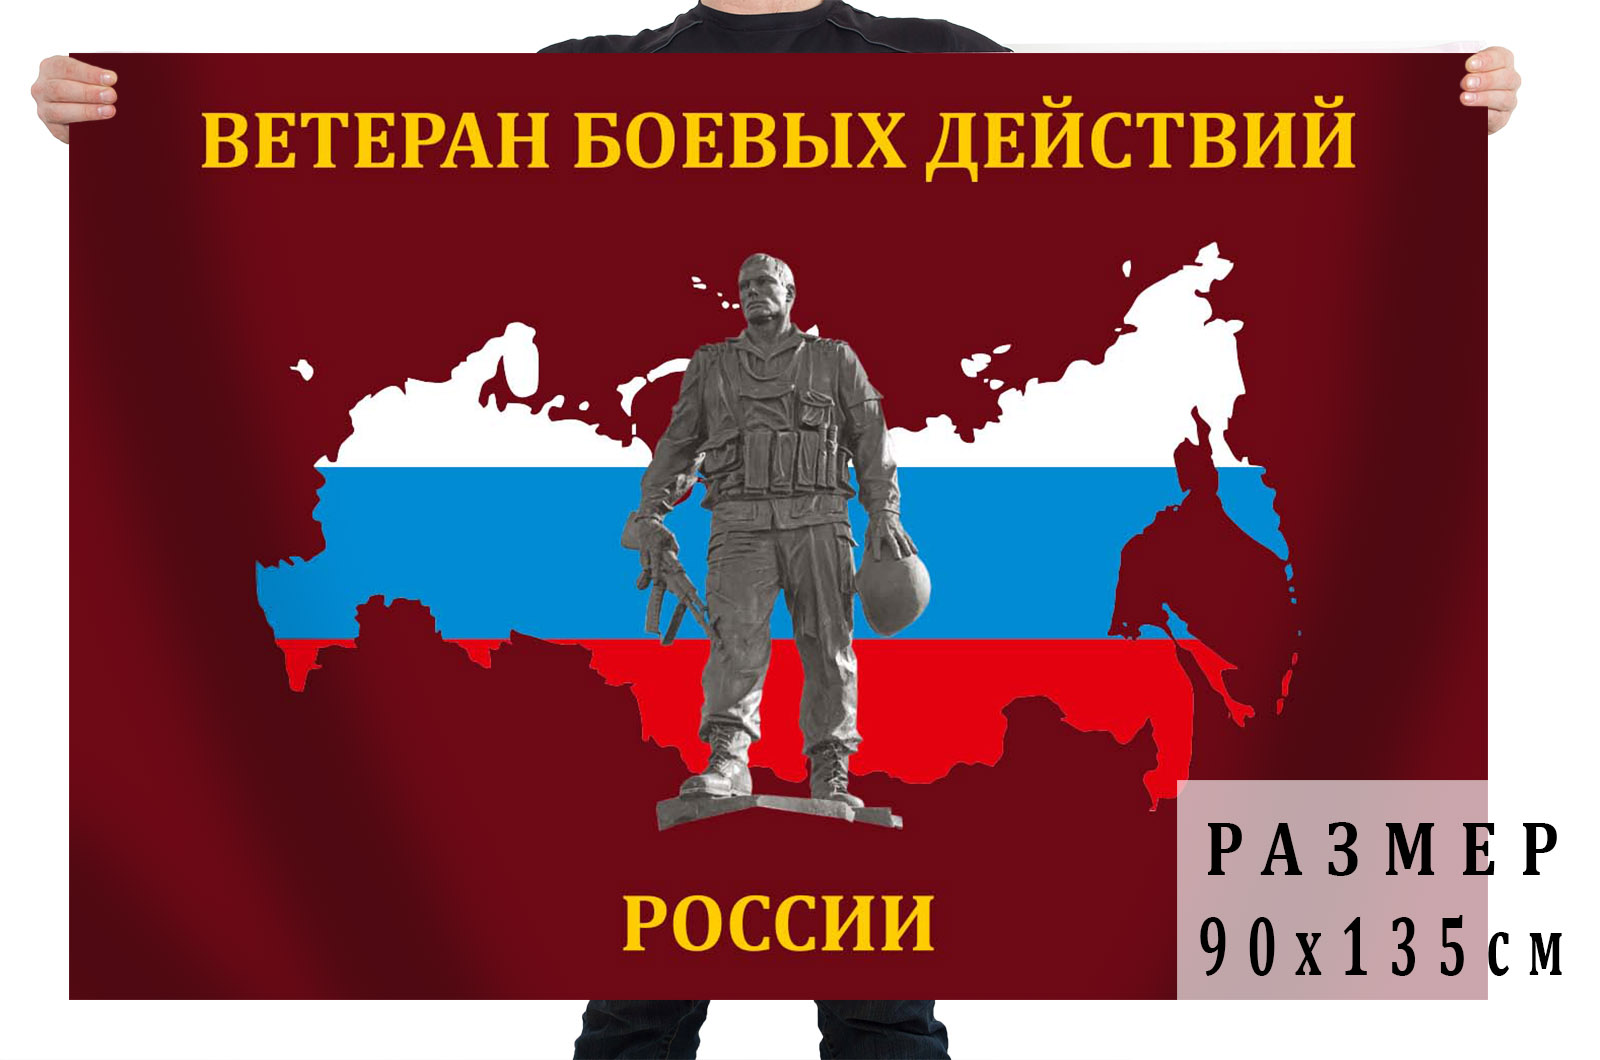 Купить флаг Ветеран боевых действий России недорого